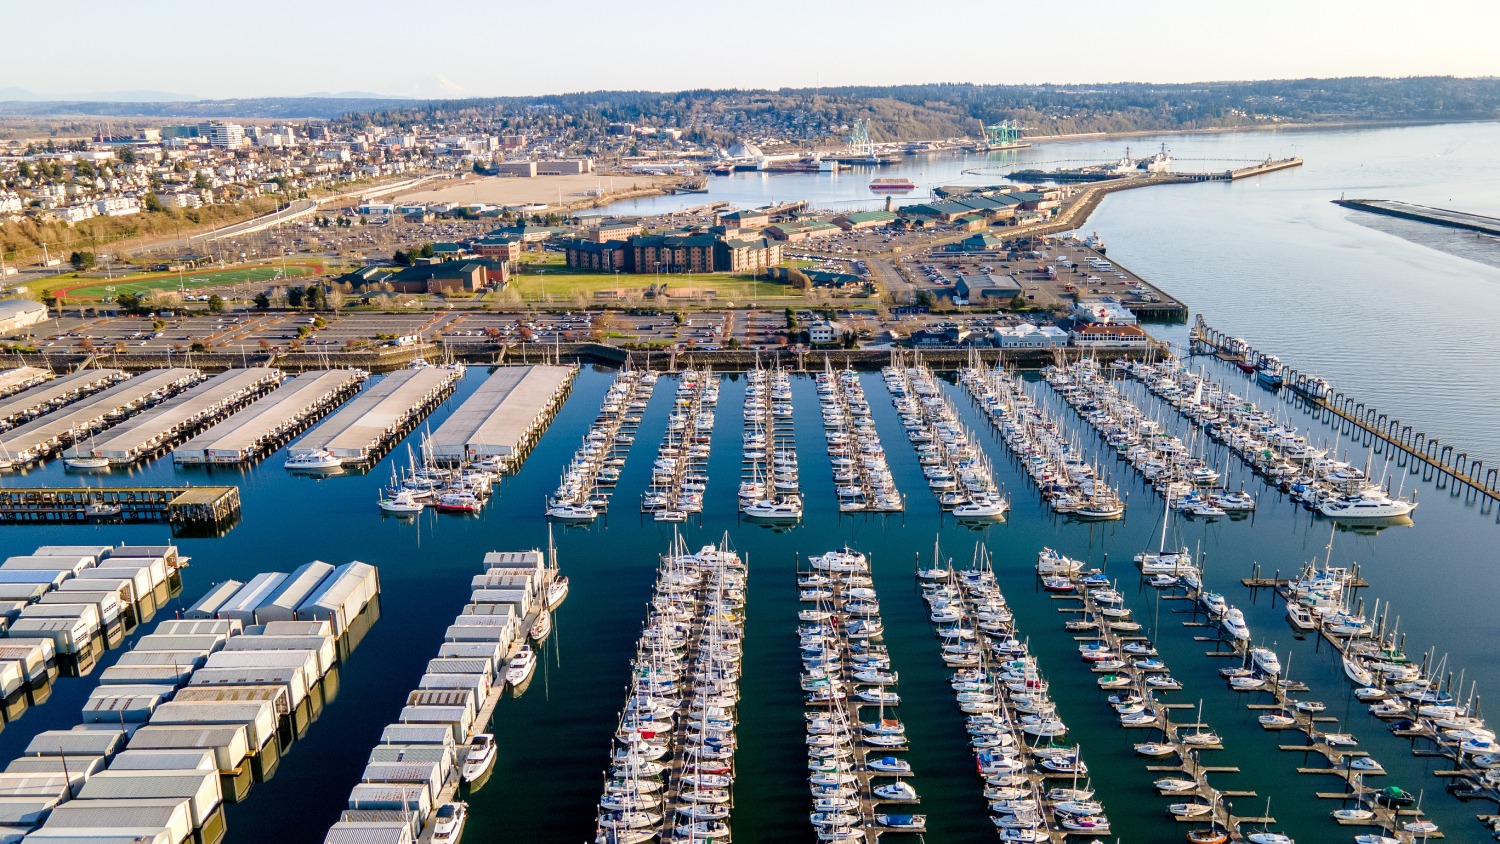 Port of Everett Marina